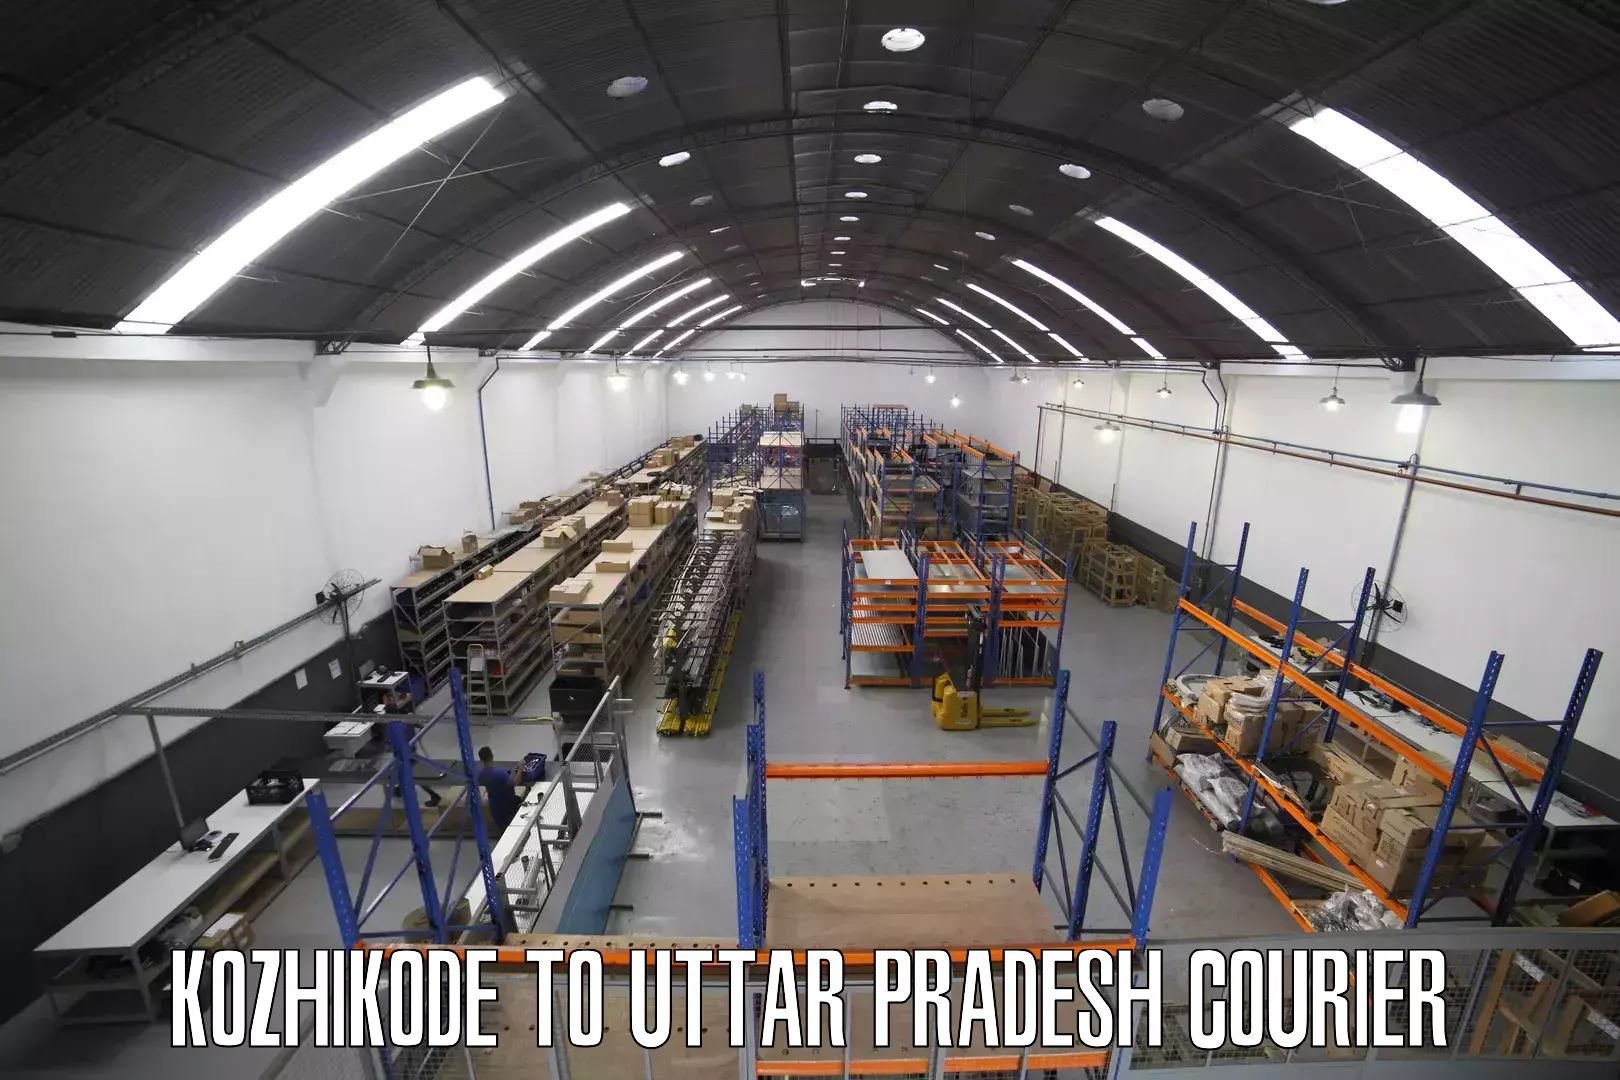 Modern courier technology Kozhikode to Uttar Pradesh